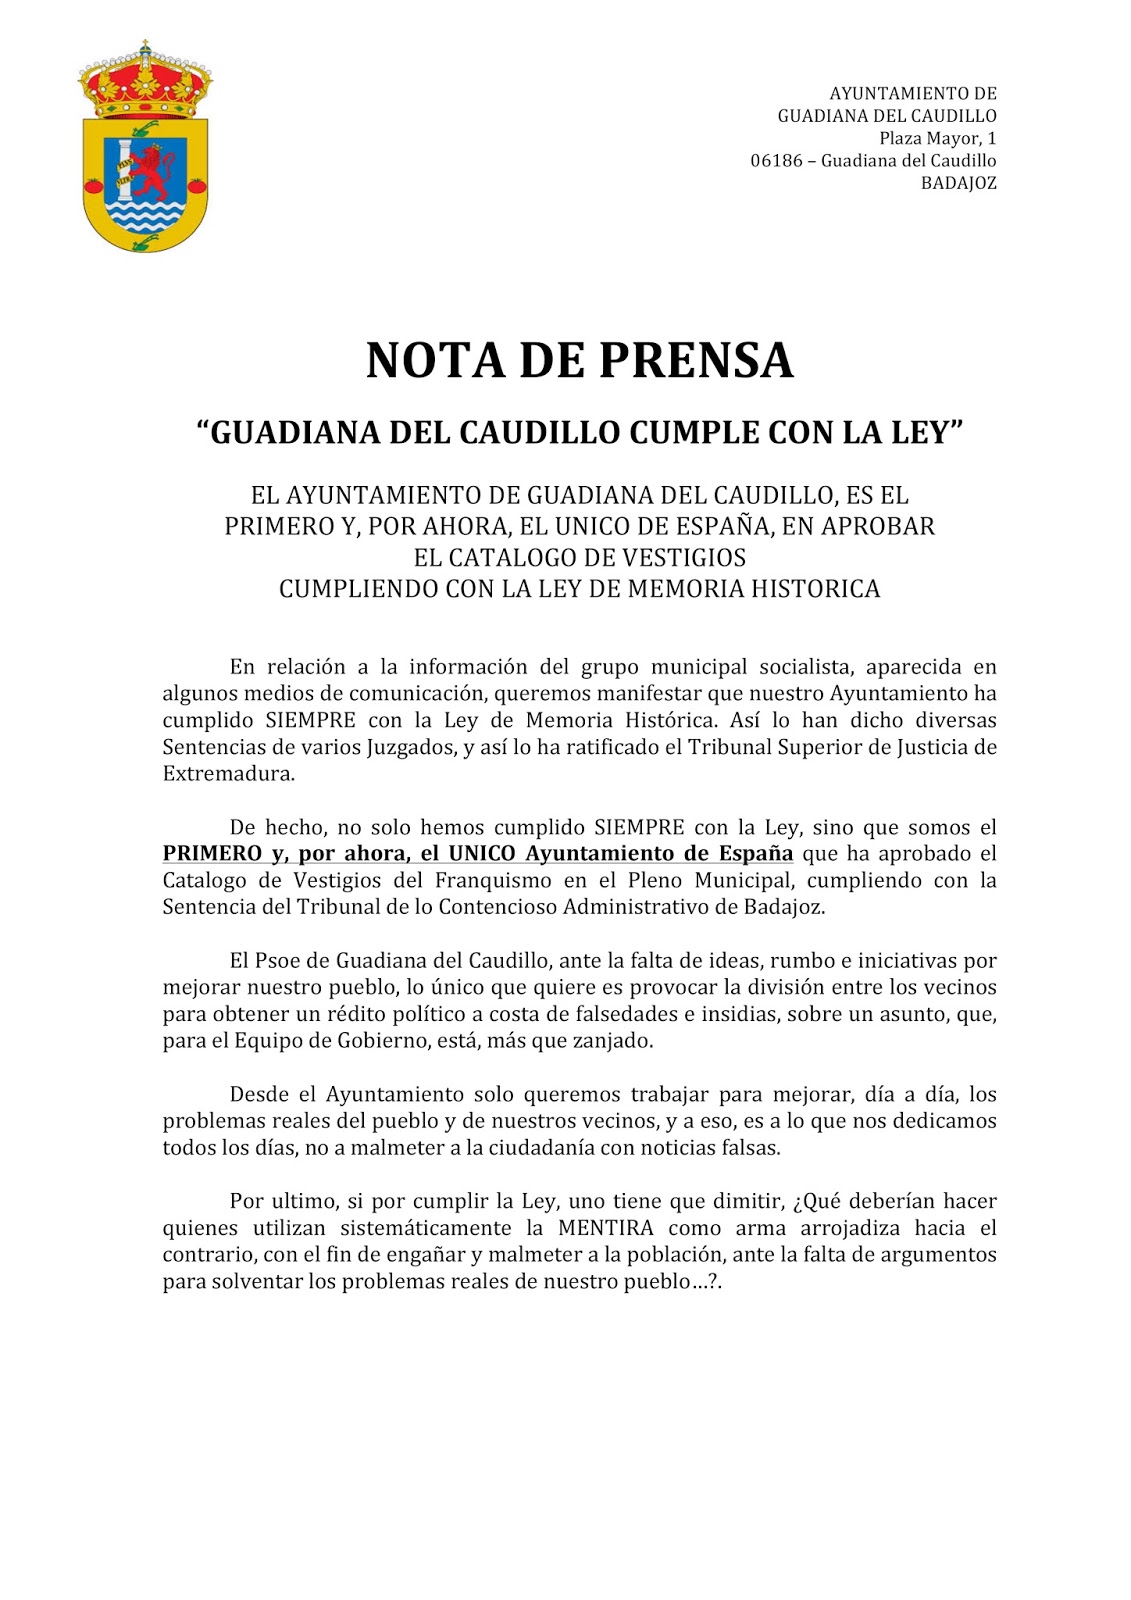 Nota de Prensa del Ayuntamiento de Guadiana del Caudillo - Ayuntamiento